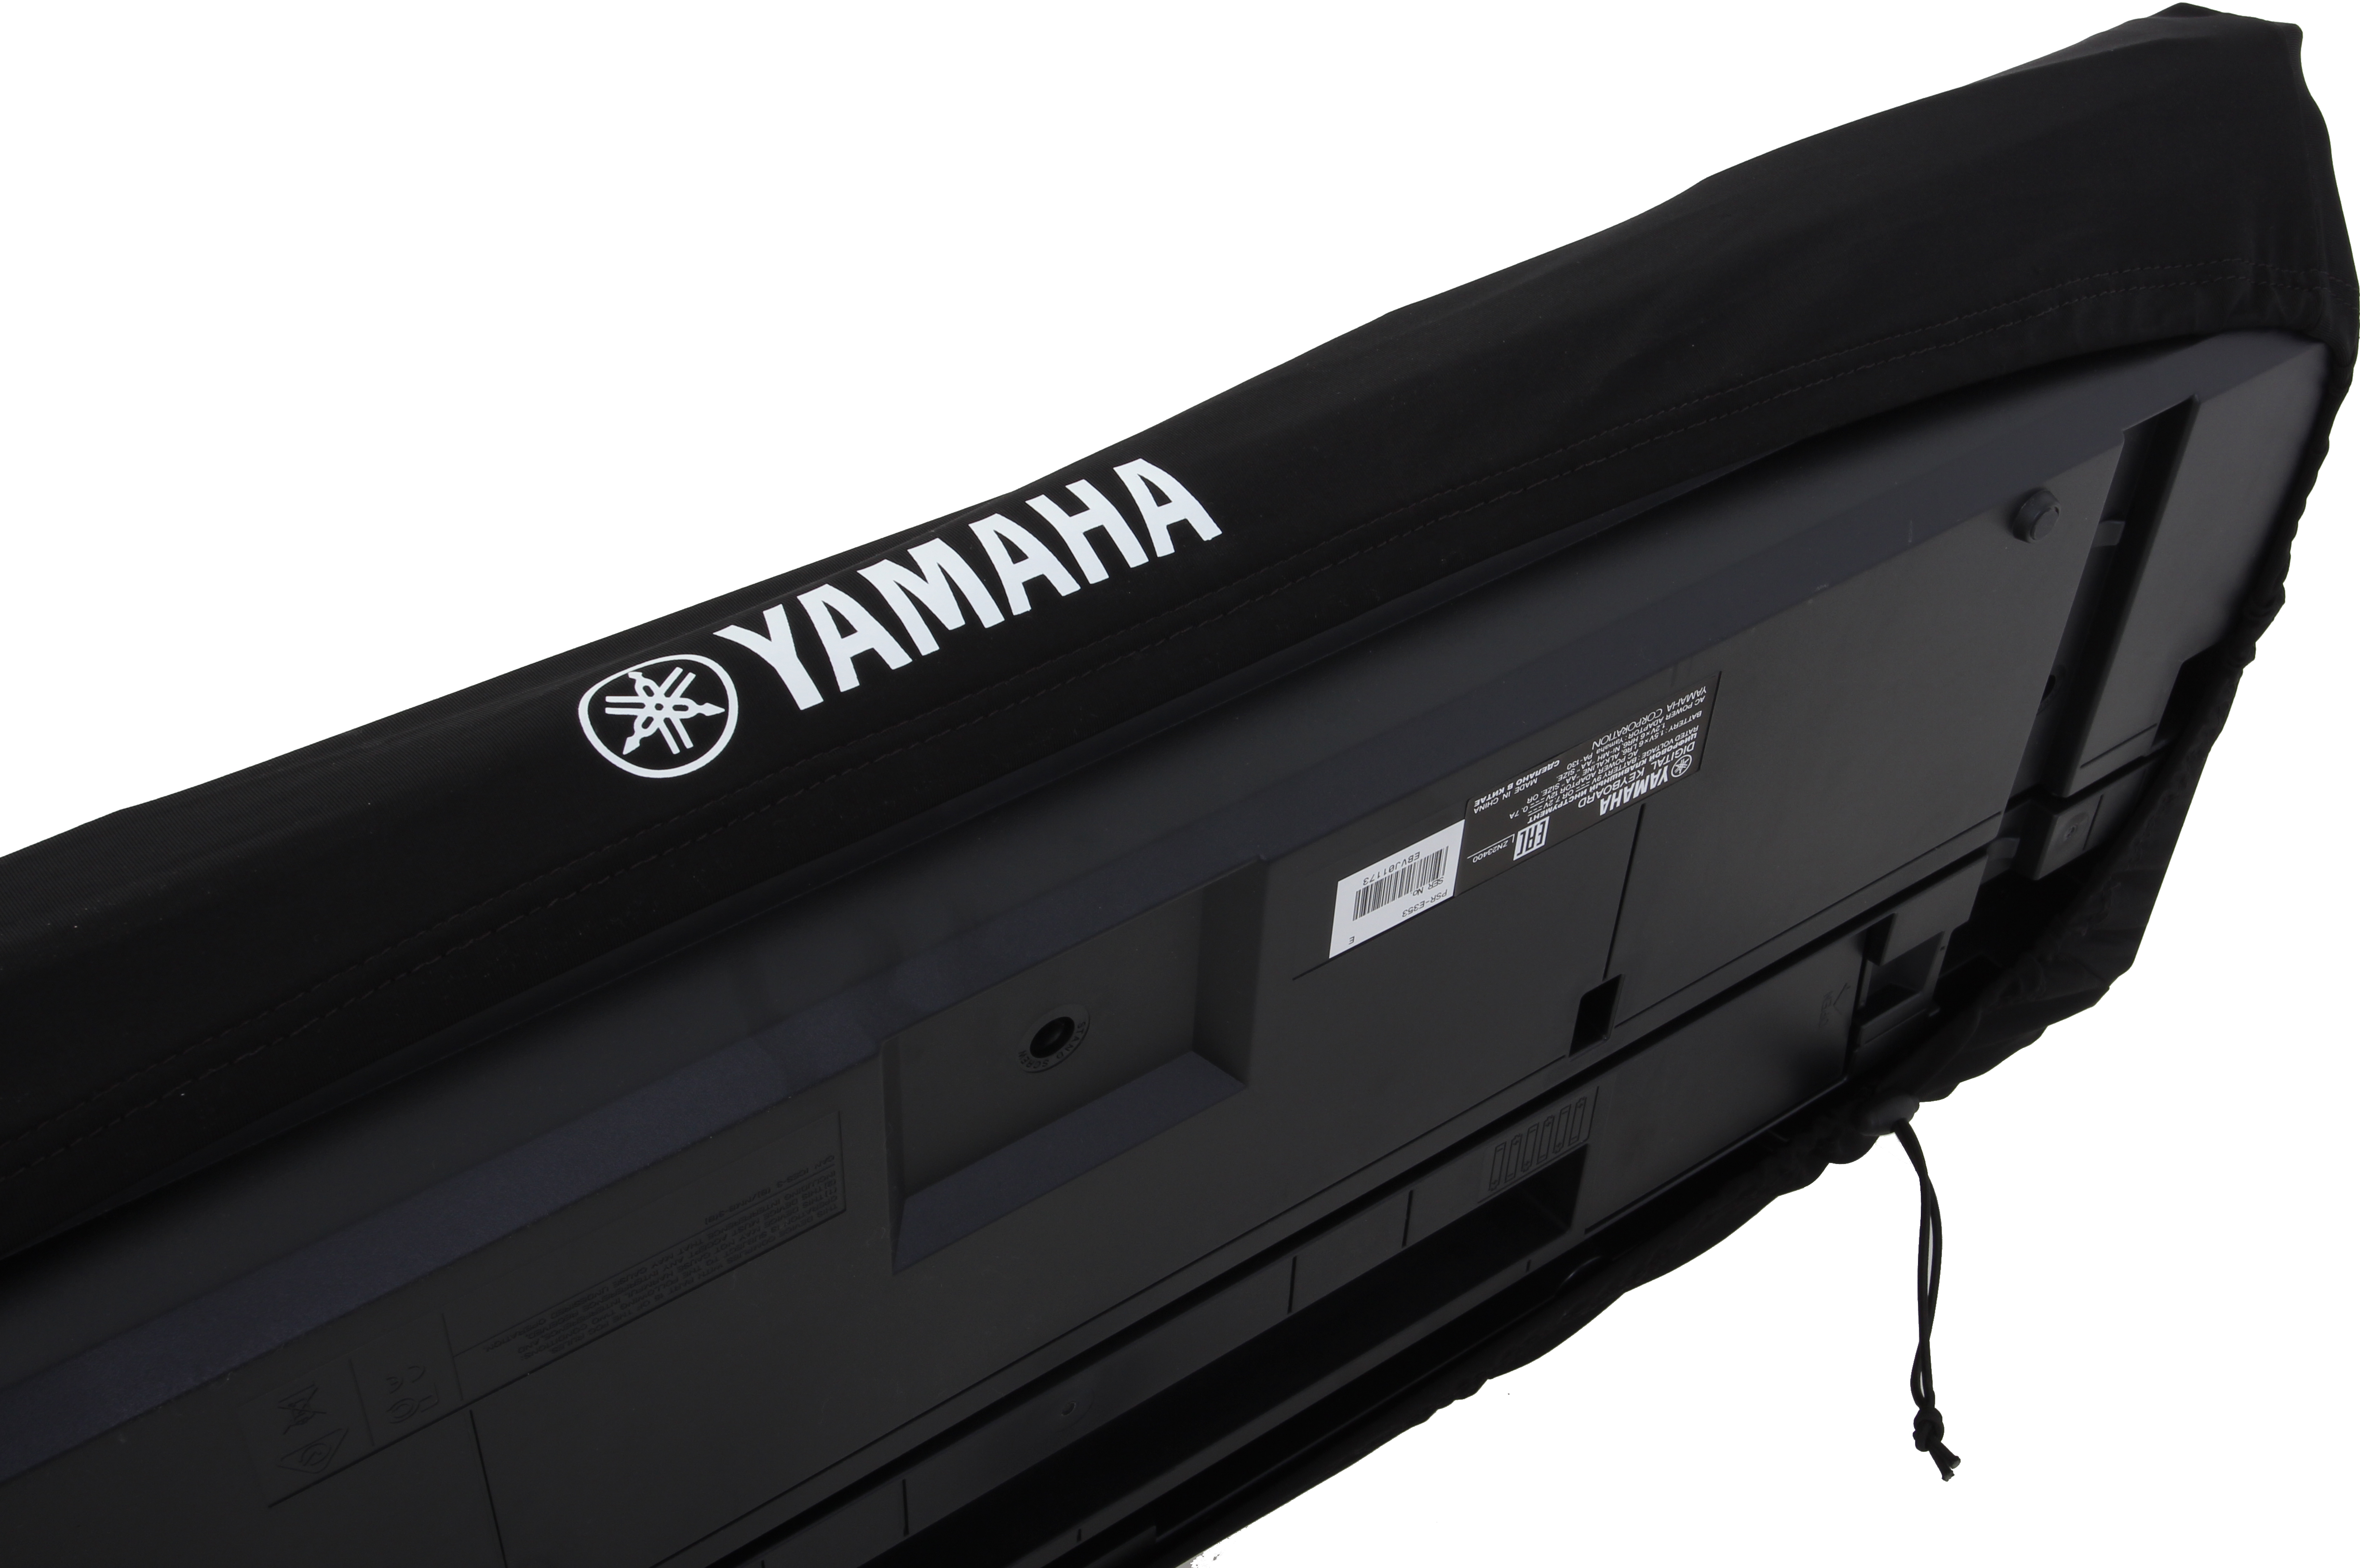 Yamaha DC18A Dust Cover 92 x 29 x 10